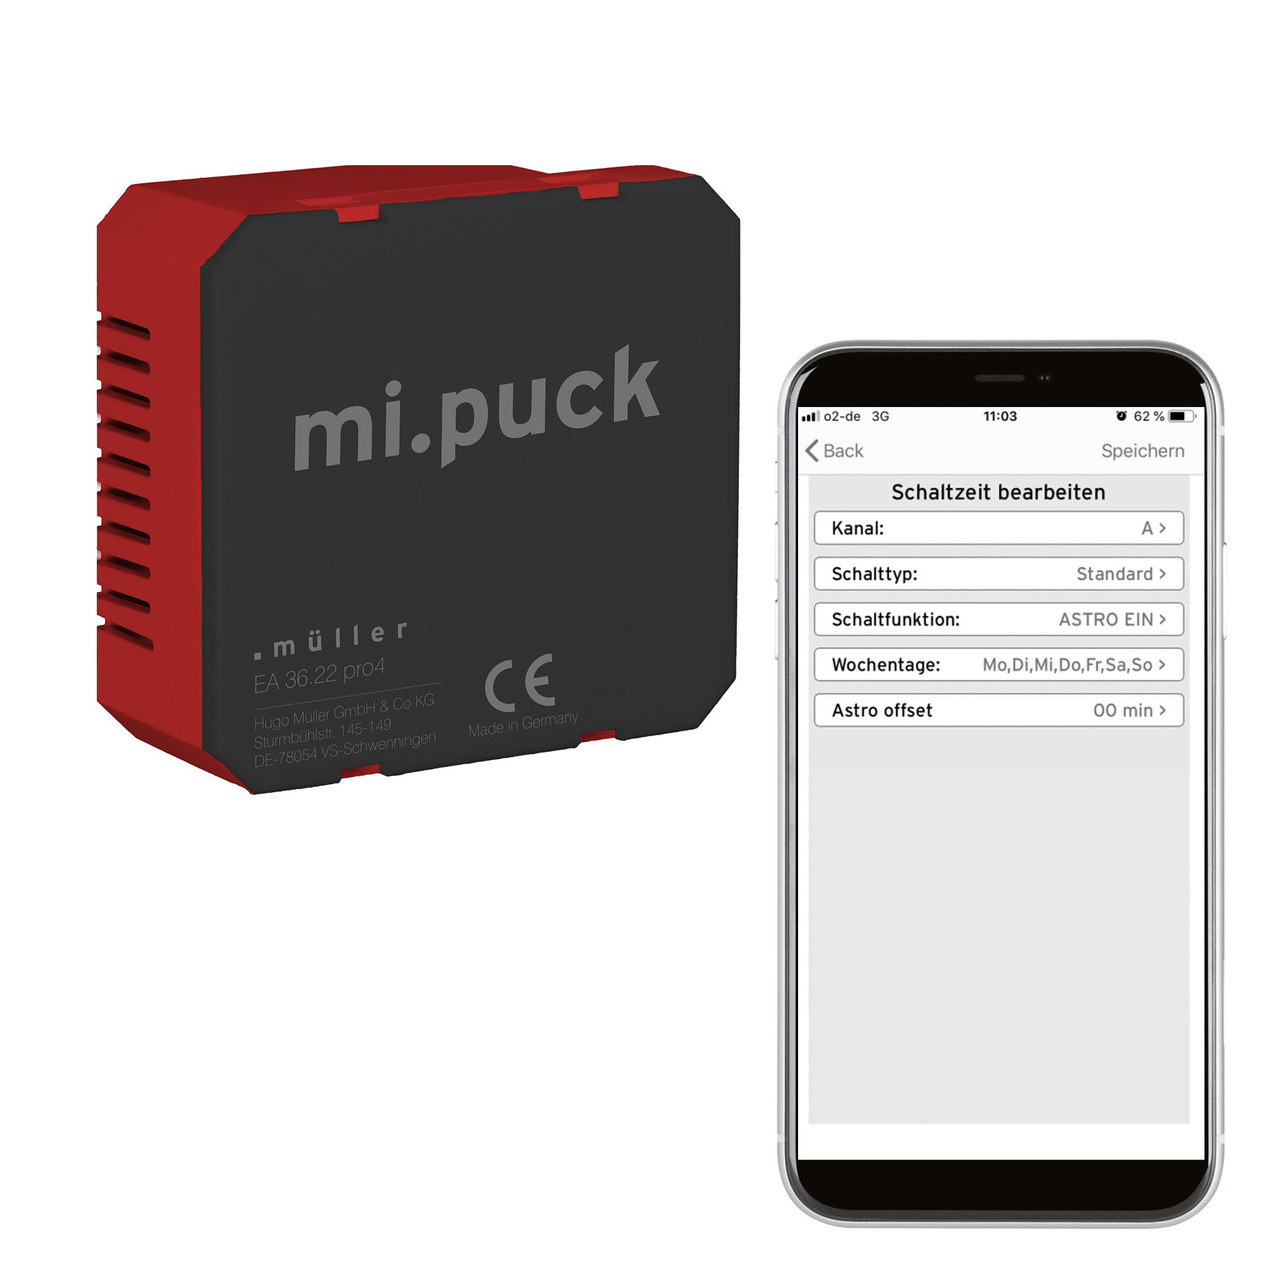 Hugo Müller digitale Wochenuhr EA 36-22 pro4- Rollladensteuerung oder Zeitschaltuhr- Bluetooth